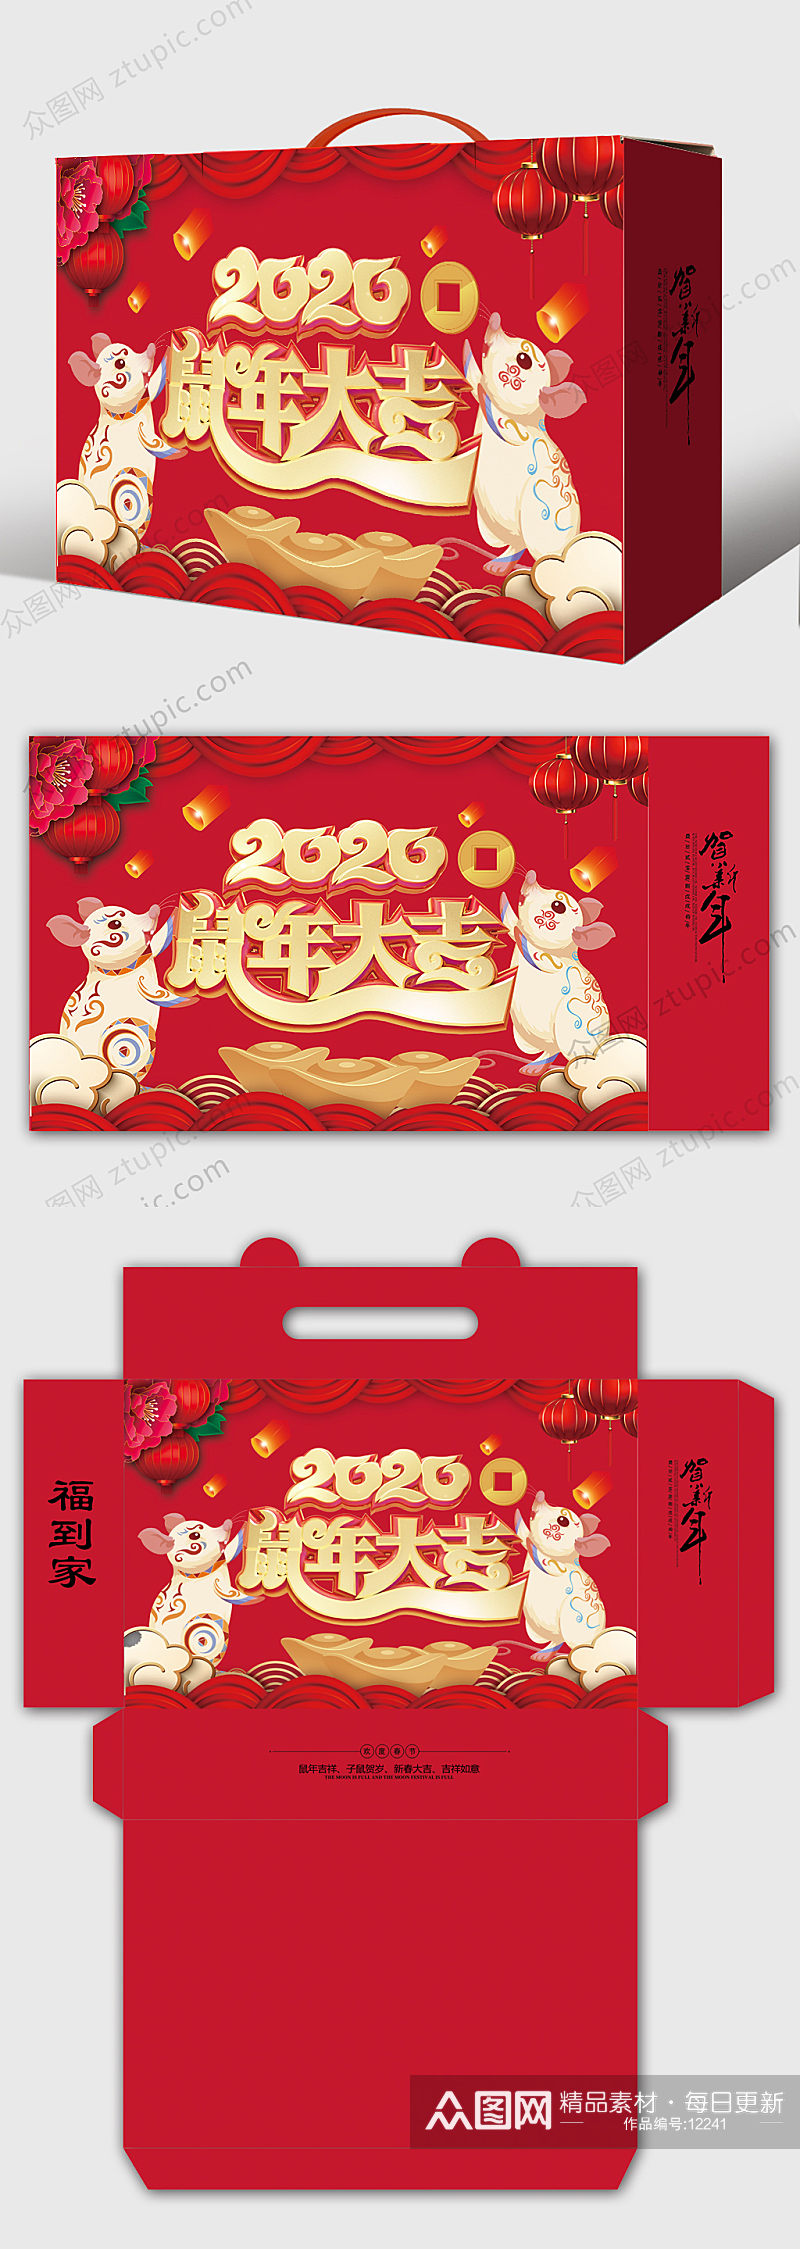 红色鼠年礼盒包装素材